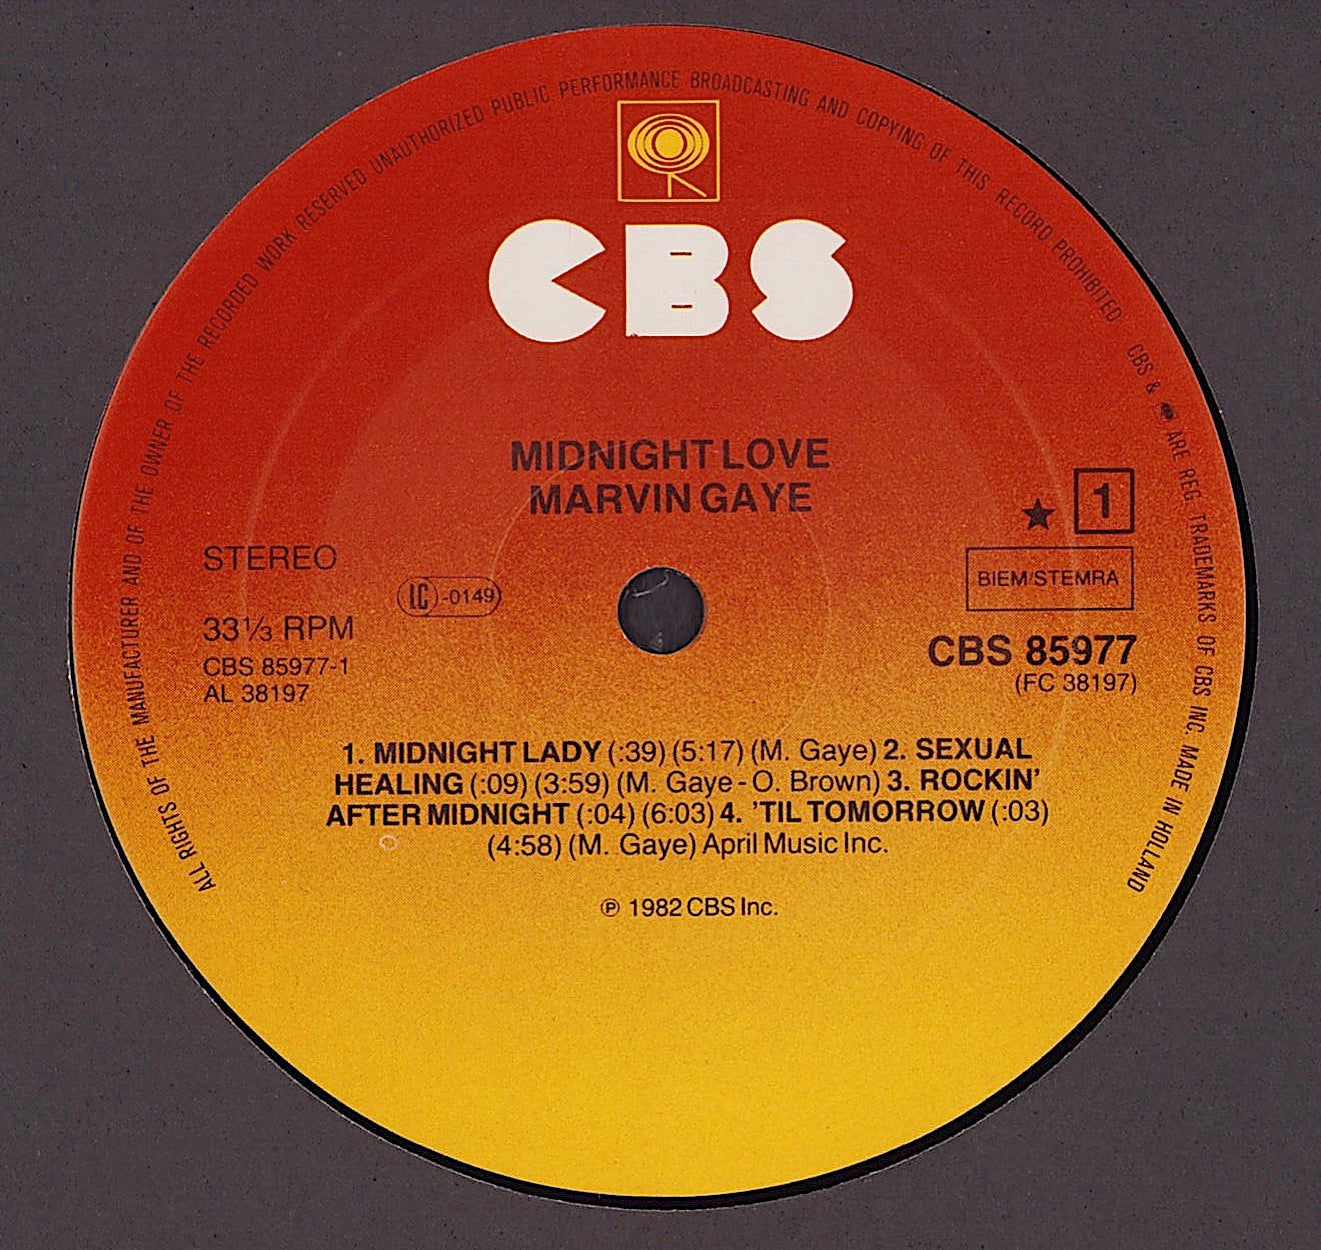 Marvin Gaye - Midnight Love Vinyl LP